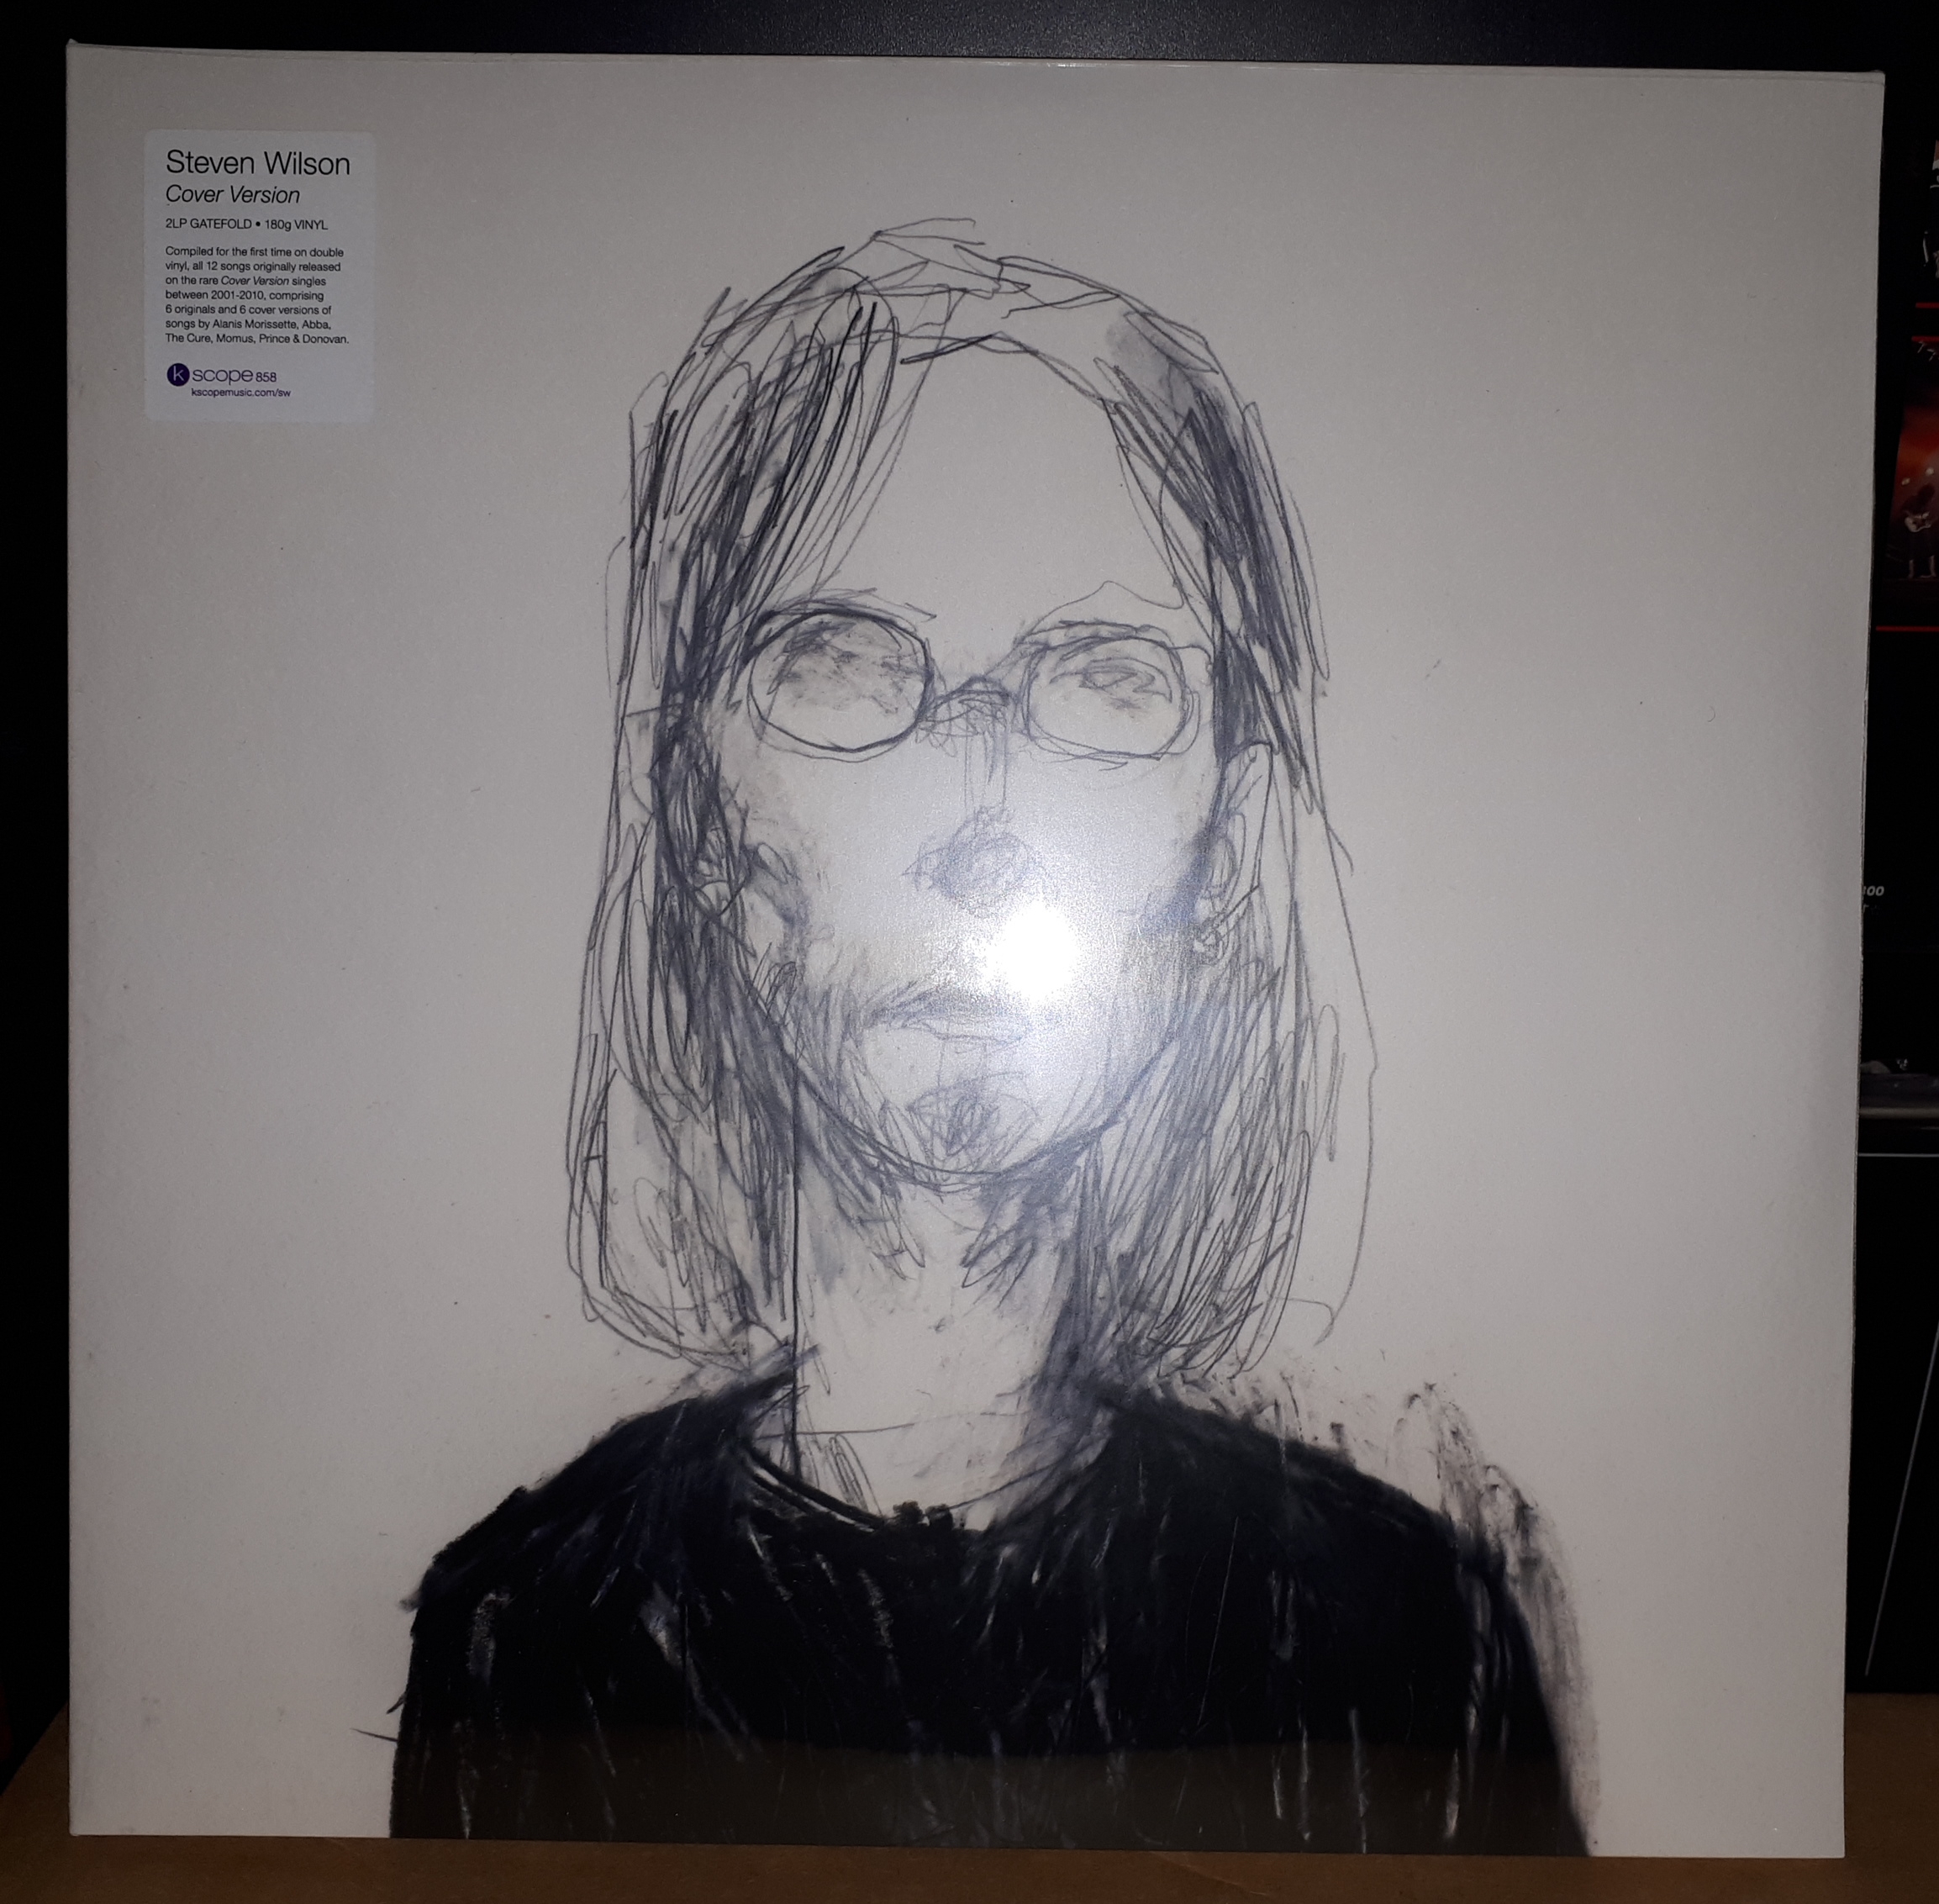 Steven Wilson - Cover version